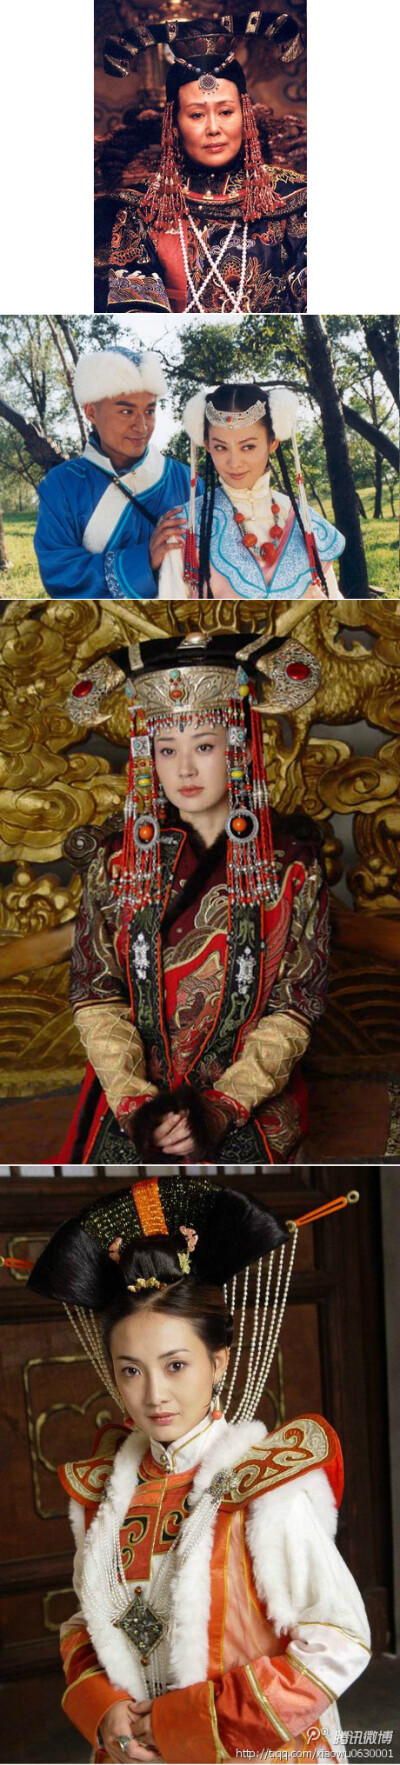 孝庄太后: 清朝,蒙古女子,小名大玉儿,皇太极妃子,一生经历太宗,世祖